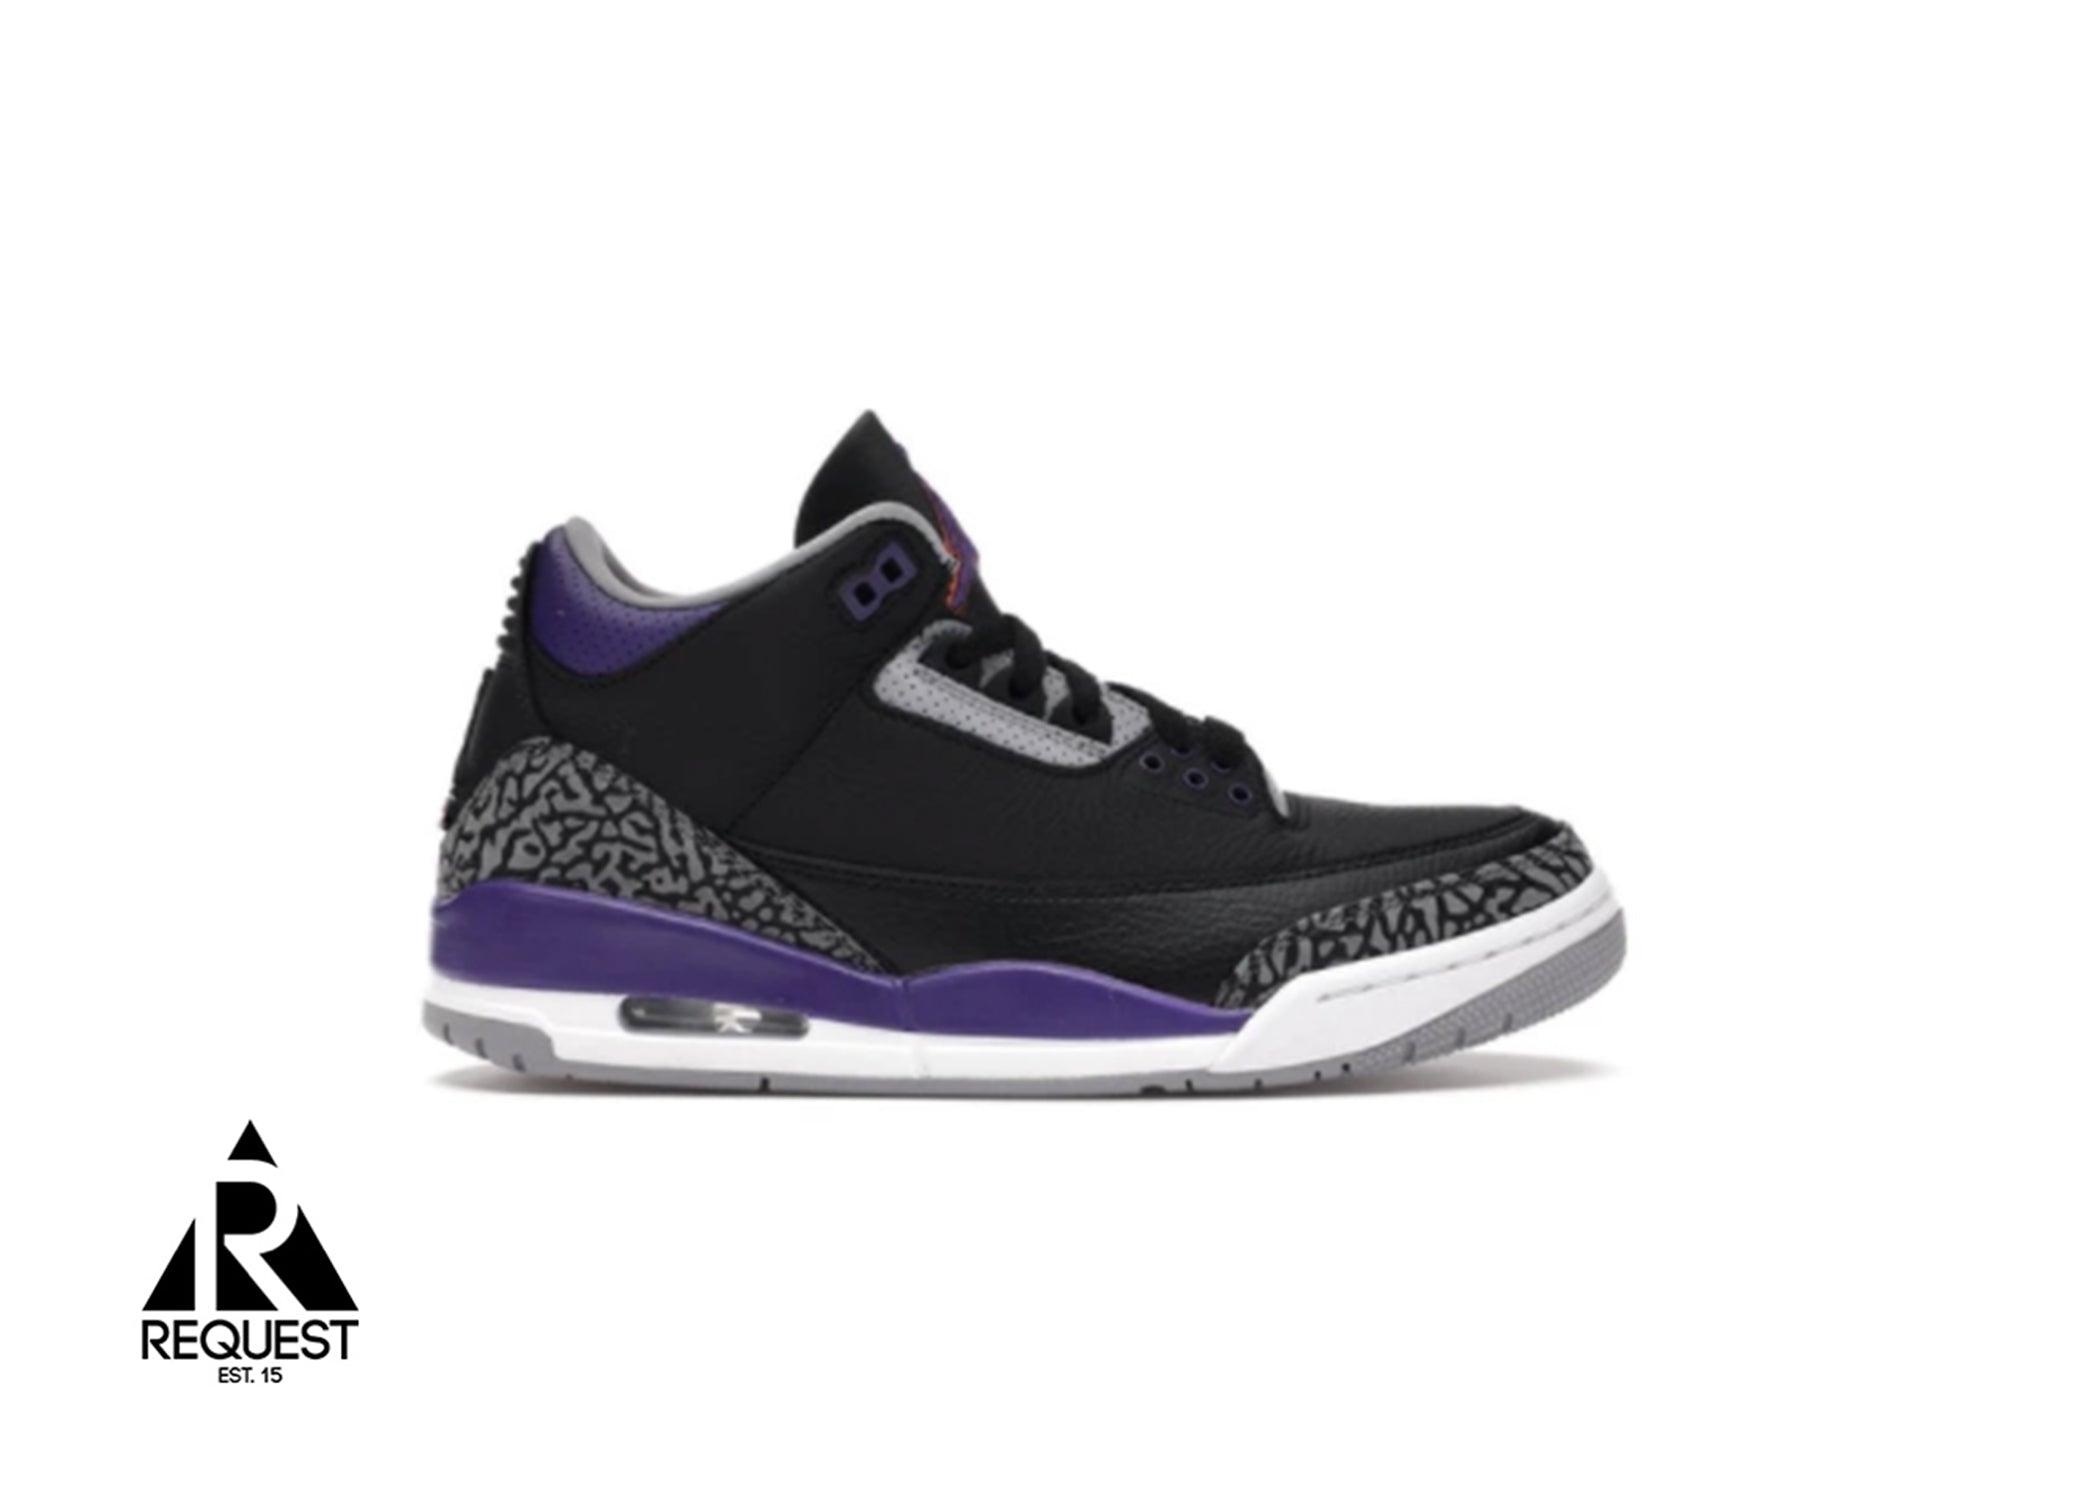 Air Jordan 3 Retro “Black Court Purple”